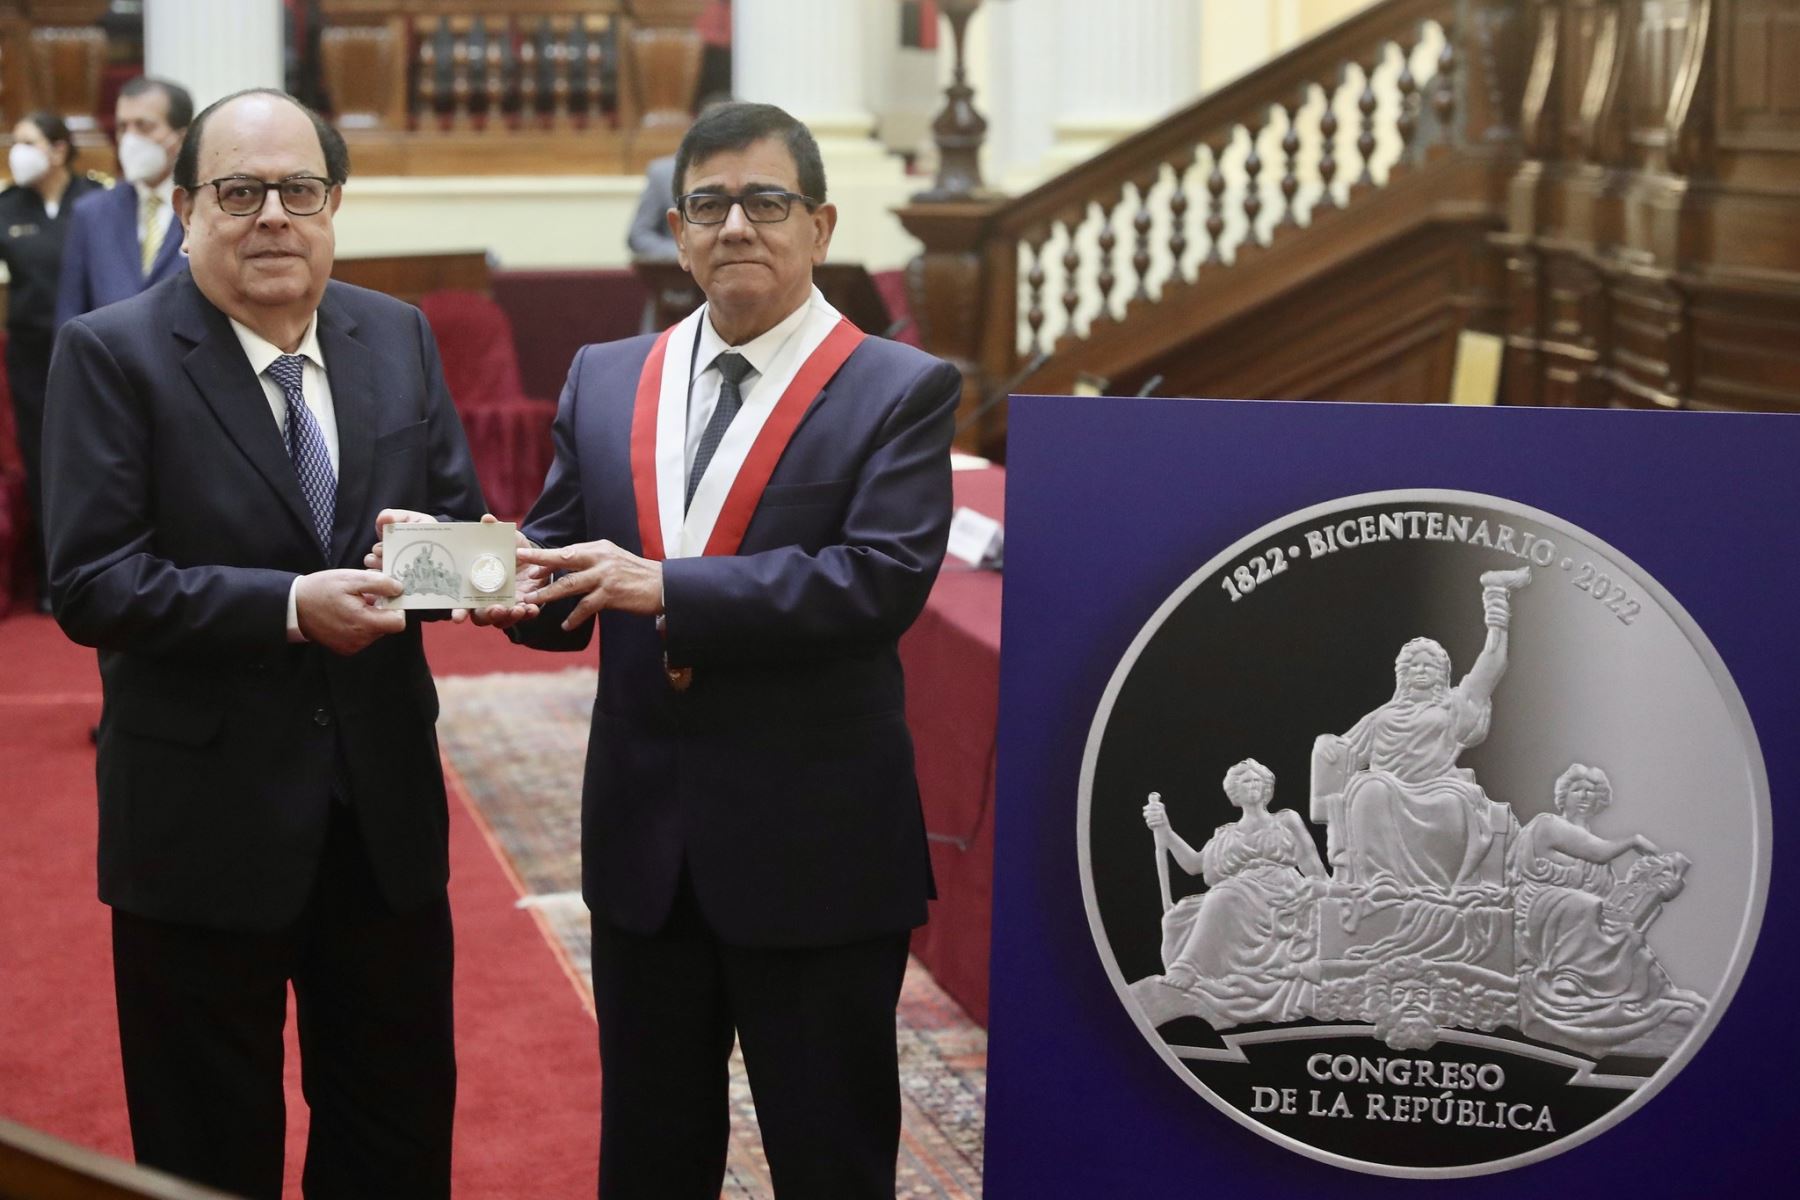 El Presidente del Congreso , José Williams Zapata , participa de la Presentación de la “ Moneda de Plata Conmemorativa por el Bicentenario del Congreso”.
Foto: Congreso